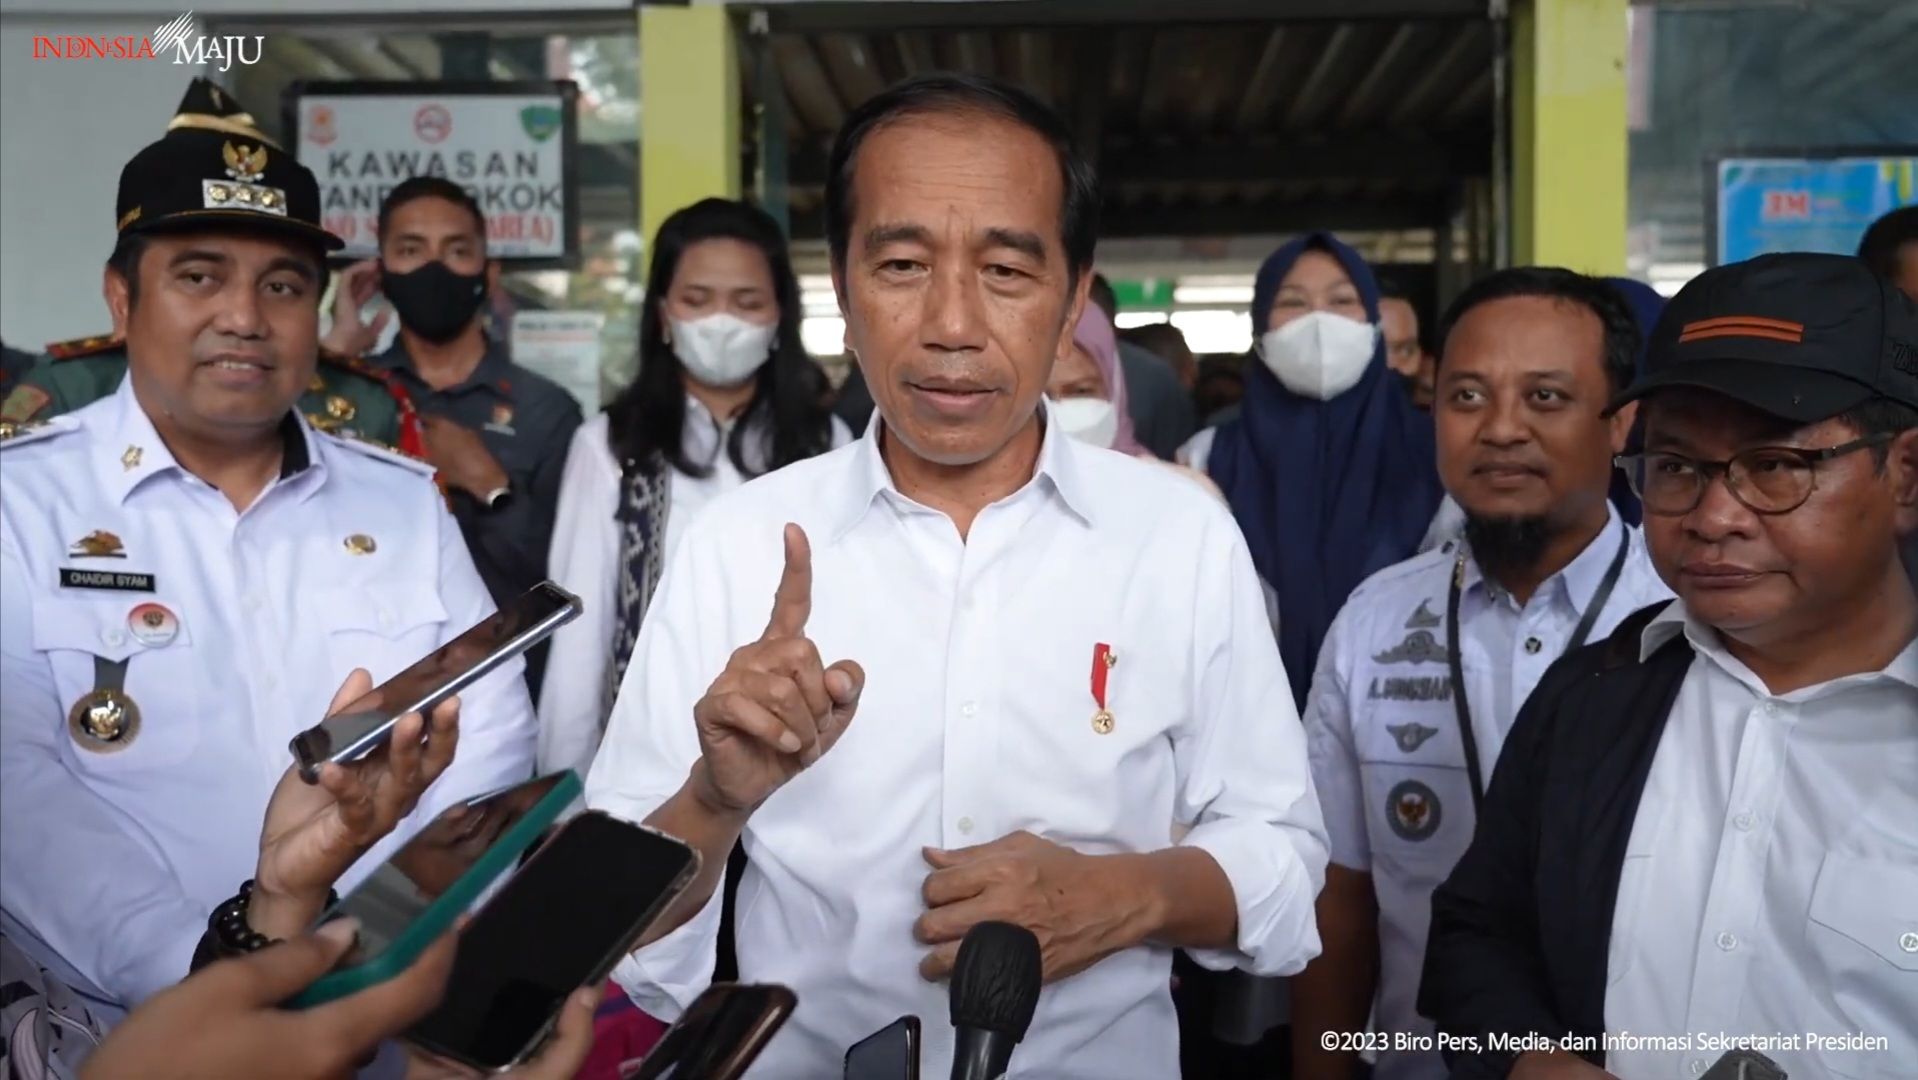 Jokowi Wanti-wanti Masyarakat Segera Vaksin “Booster”, Berapa Capaian Vaksinasi Covid-19 di Indonesia?